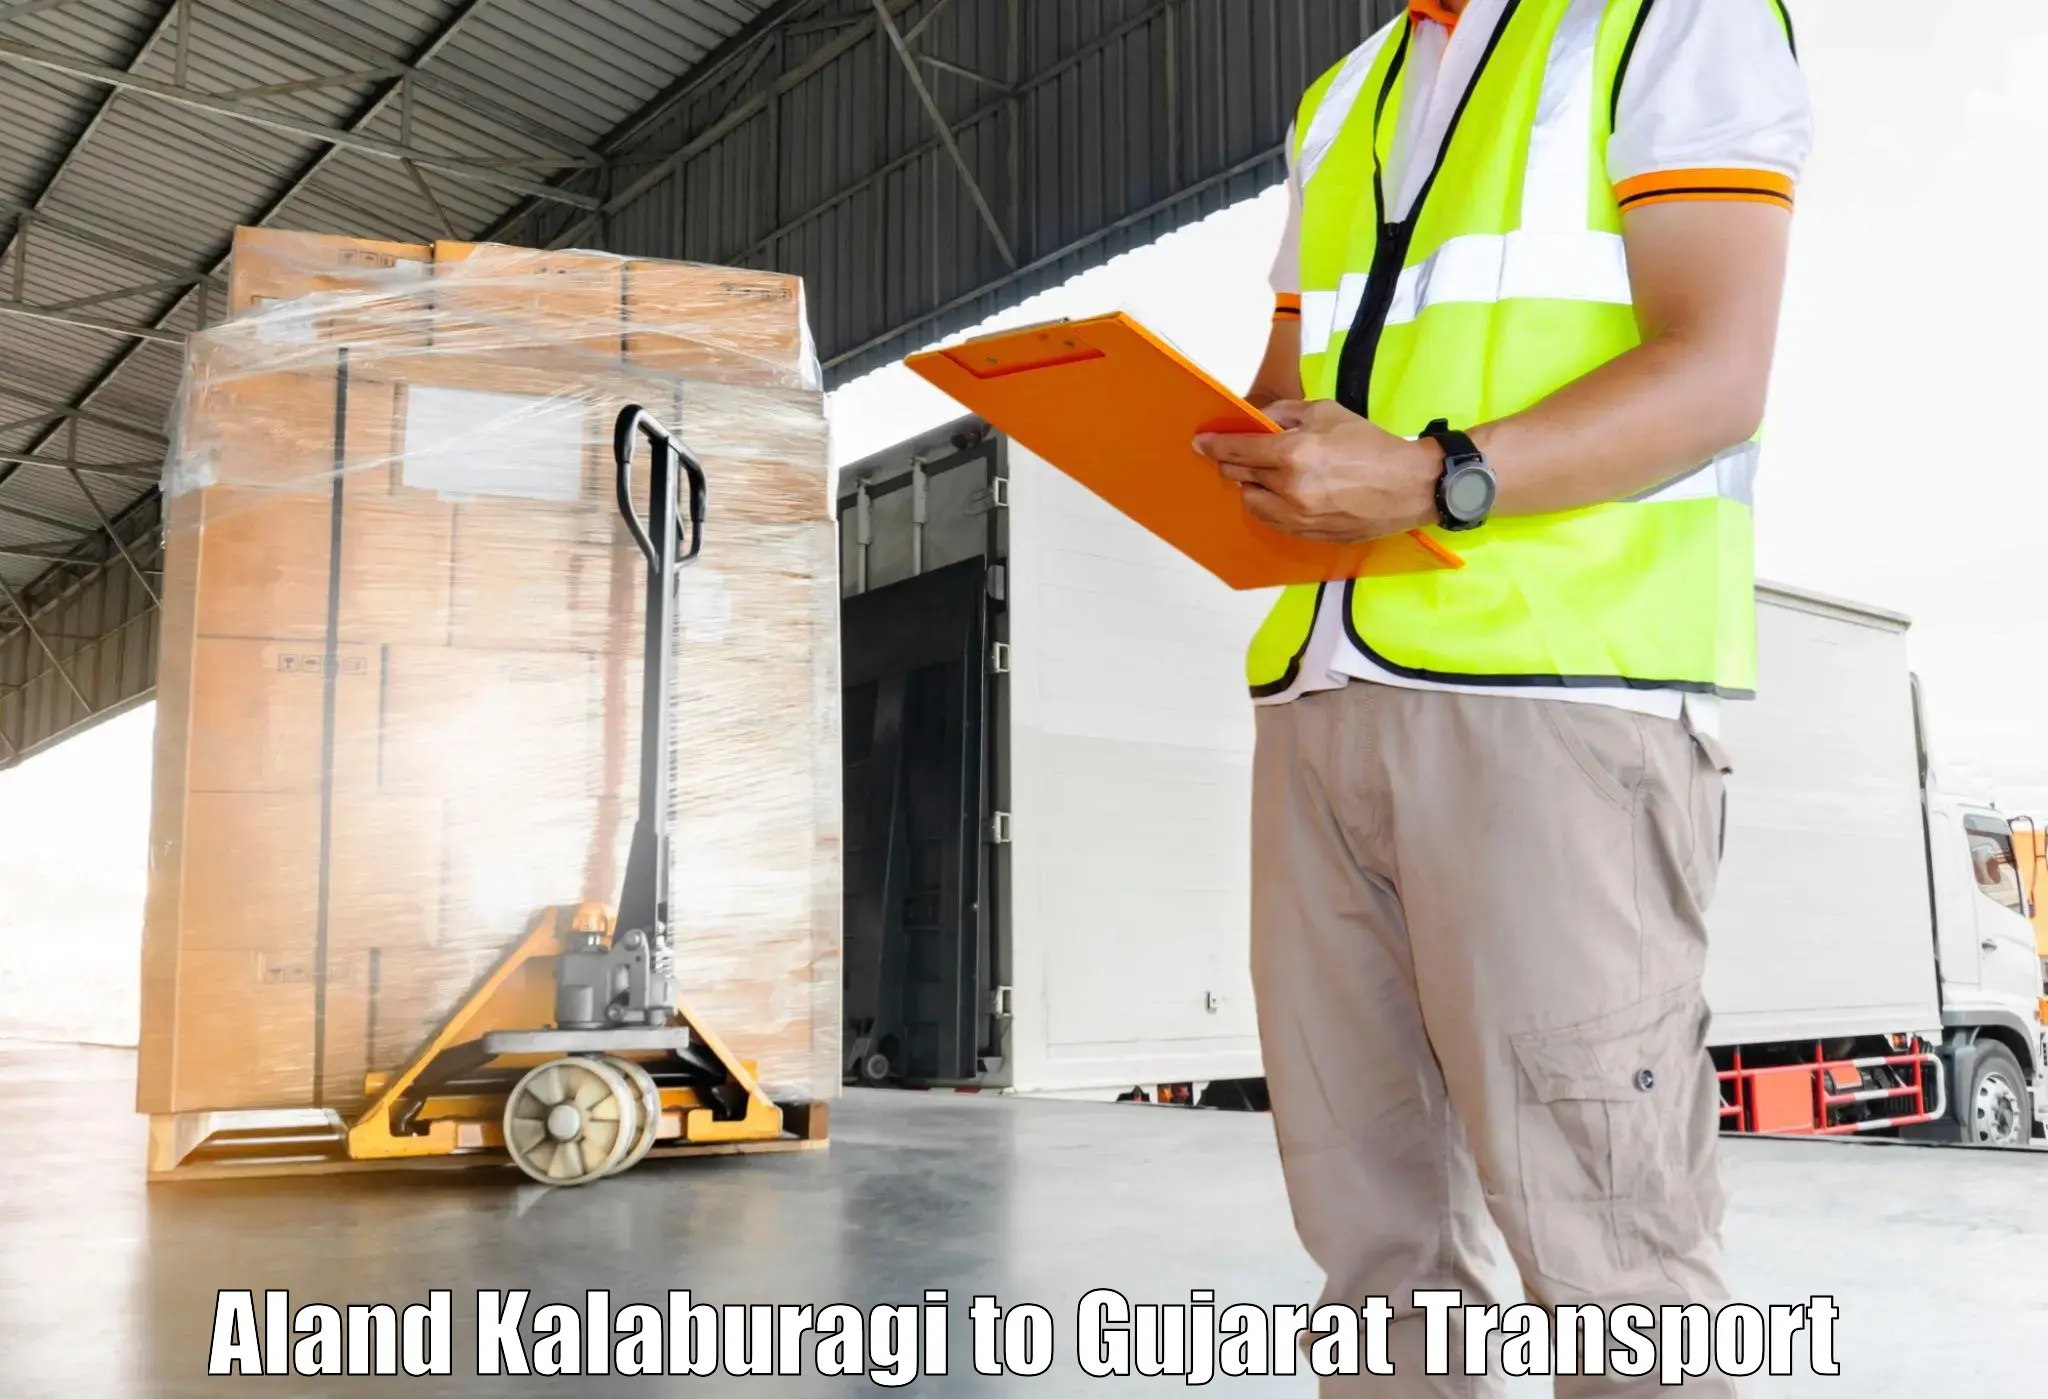 India truck logistics services Aland Kalaburagi to Deesa